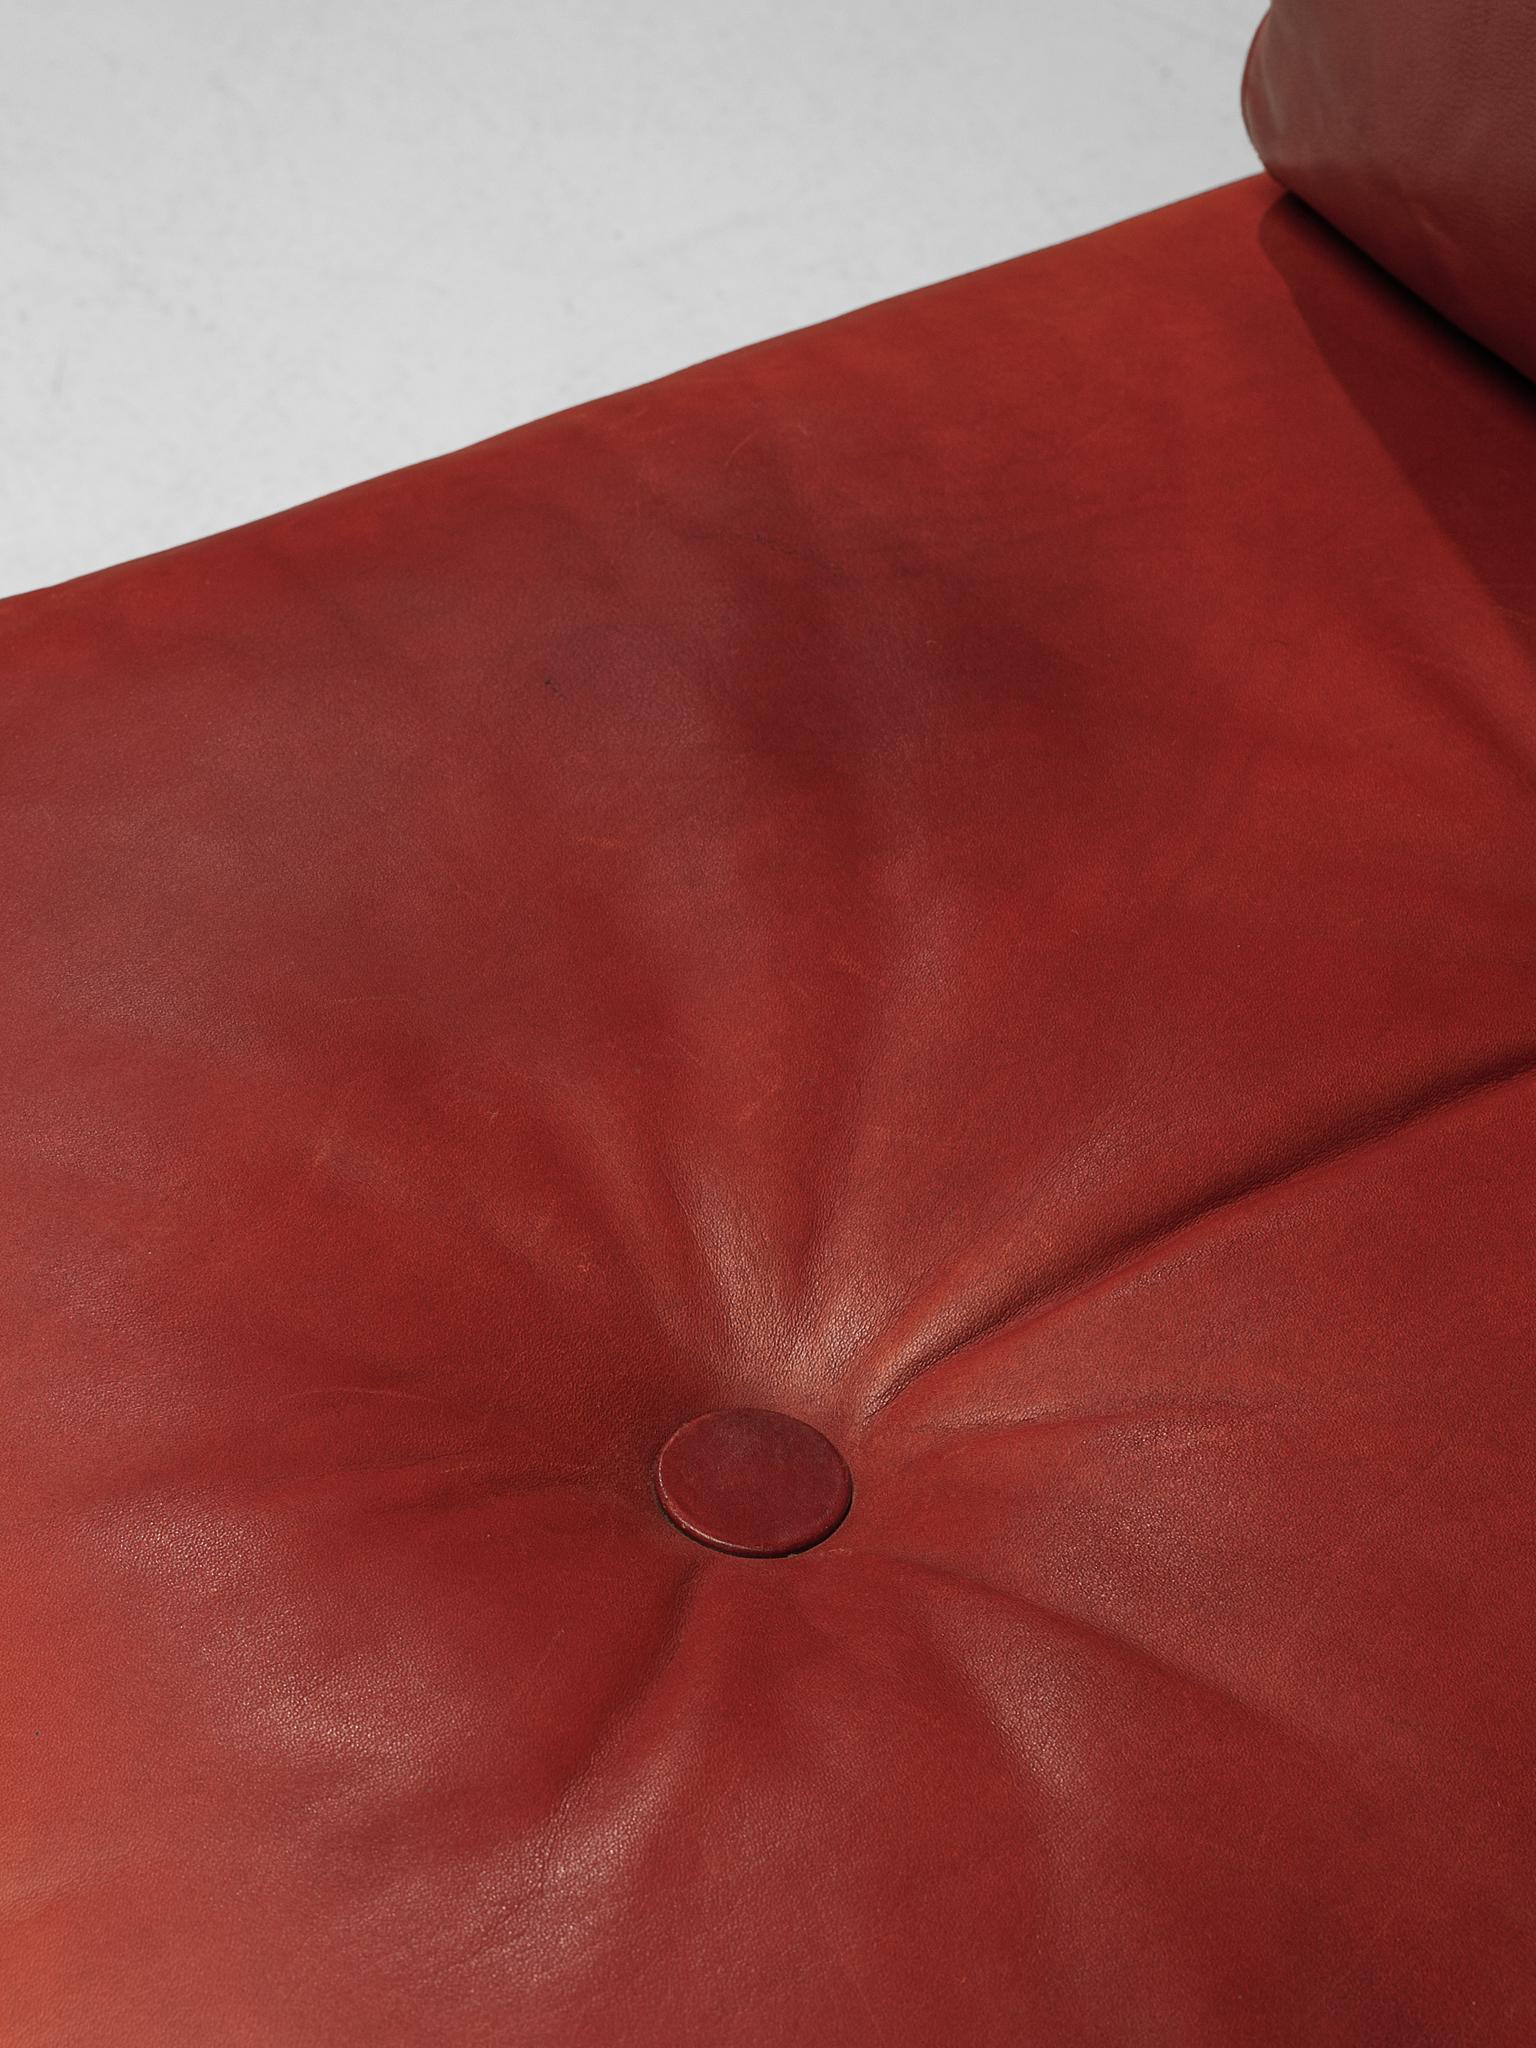 Franz Köttgen for Kill International Three-Seat Sofa in Red Leather 2